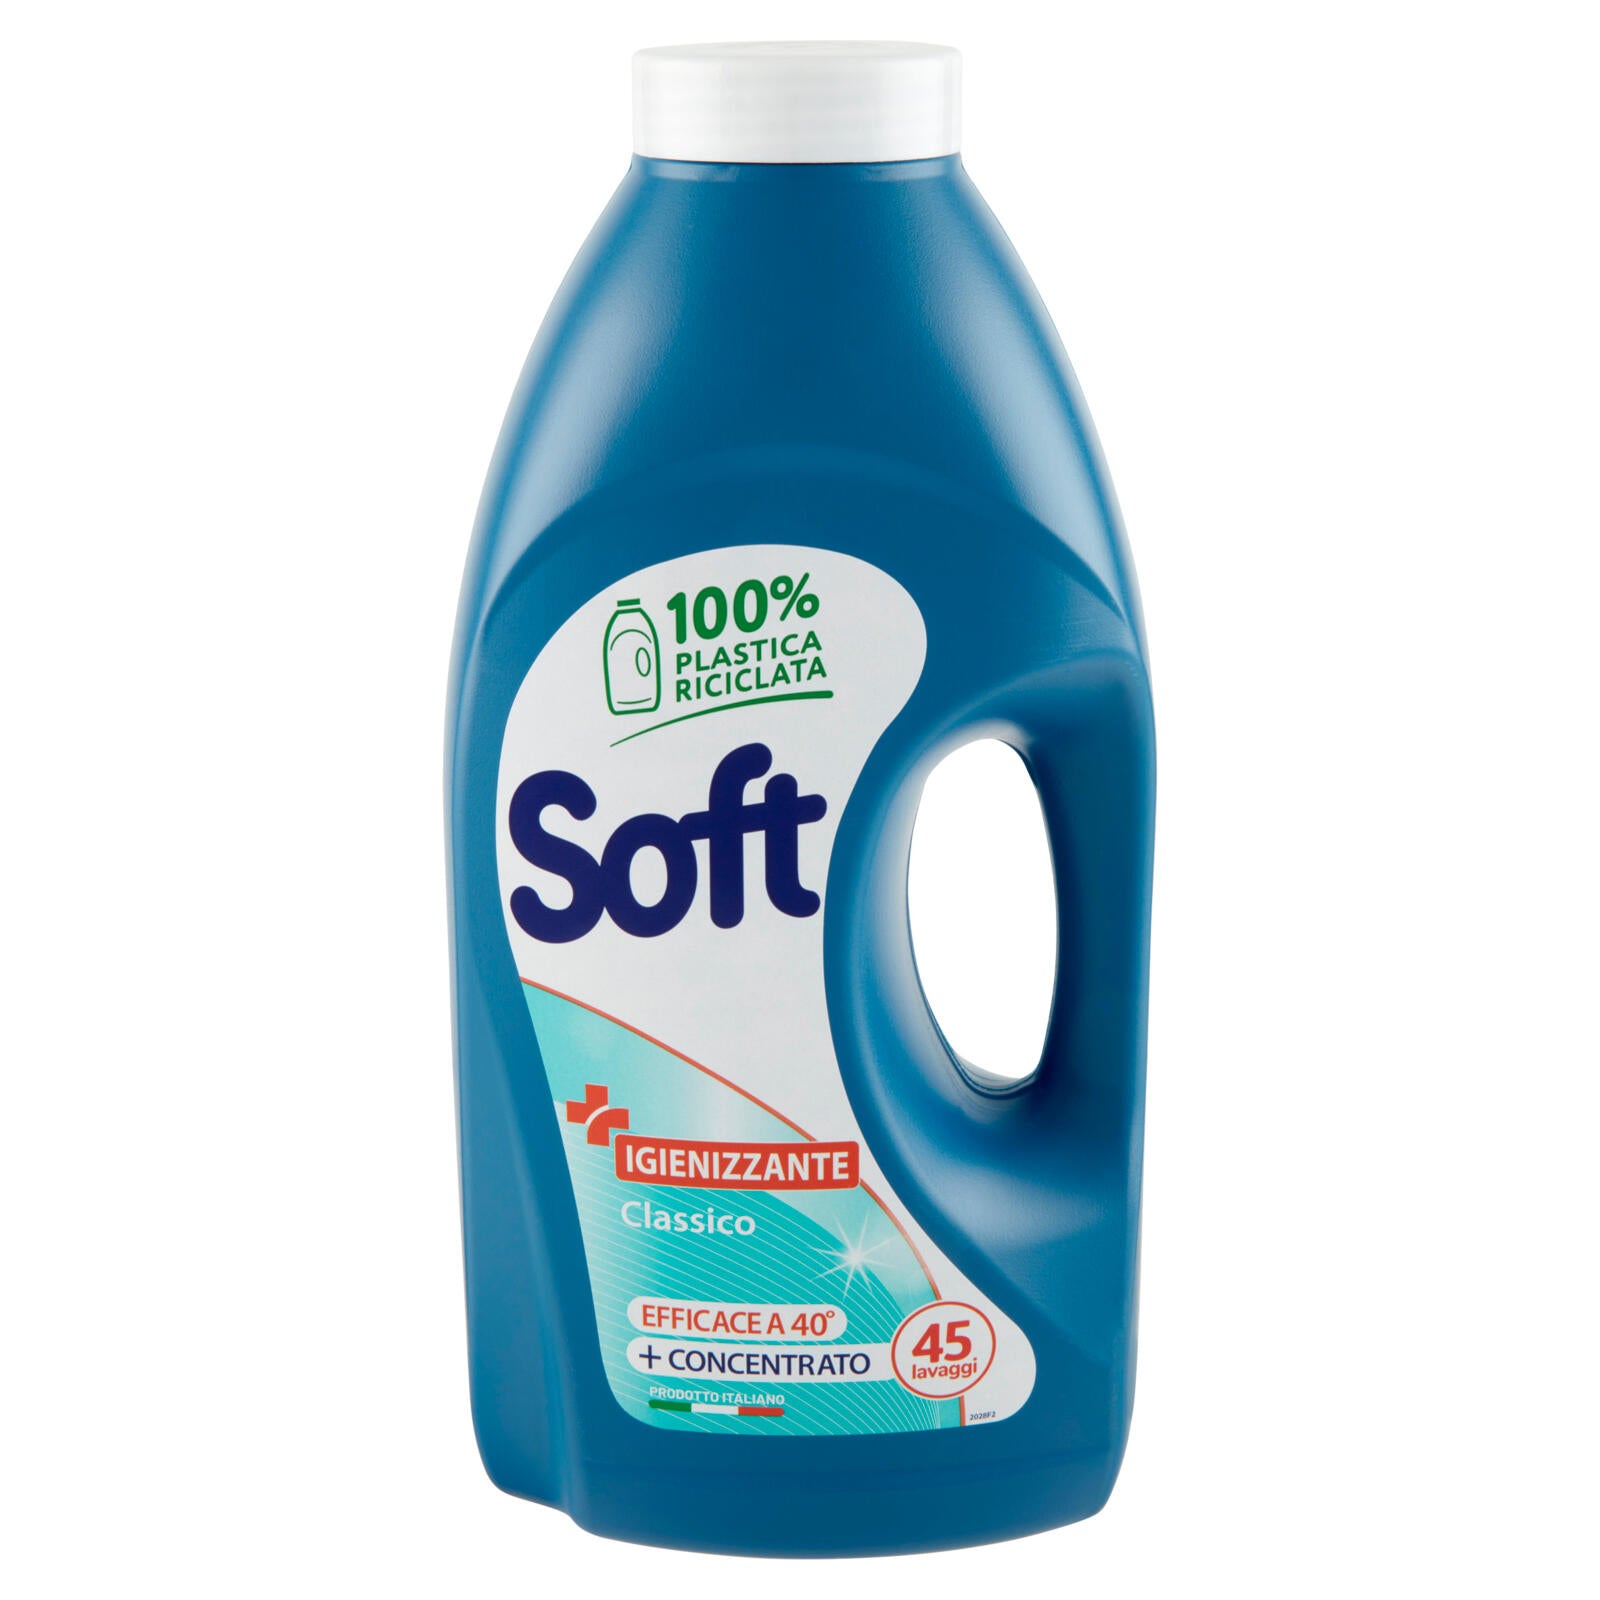 Soft Igienizzante Classico 45 lavaggi	 2250 ml